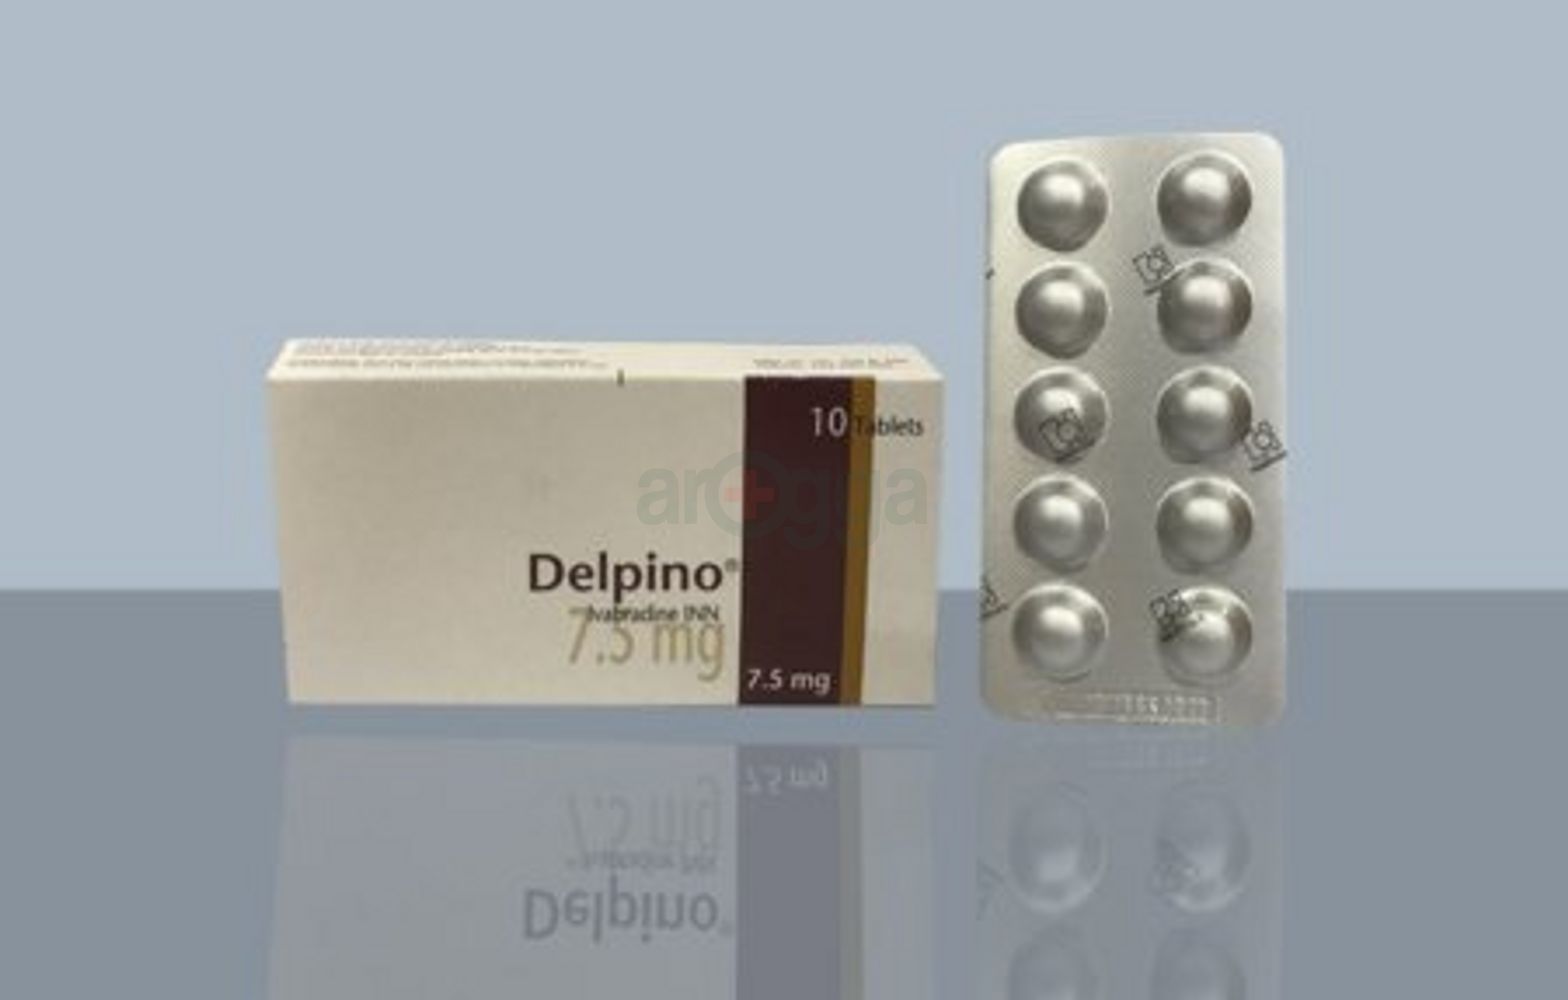 Delpino 7.5